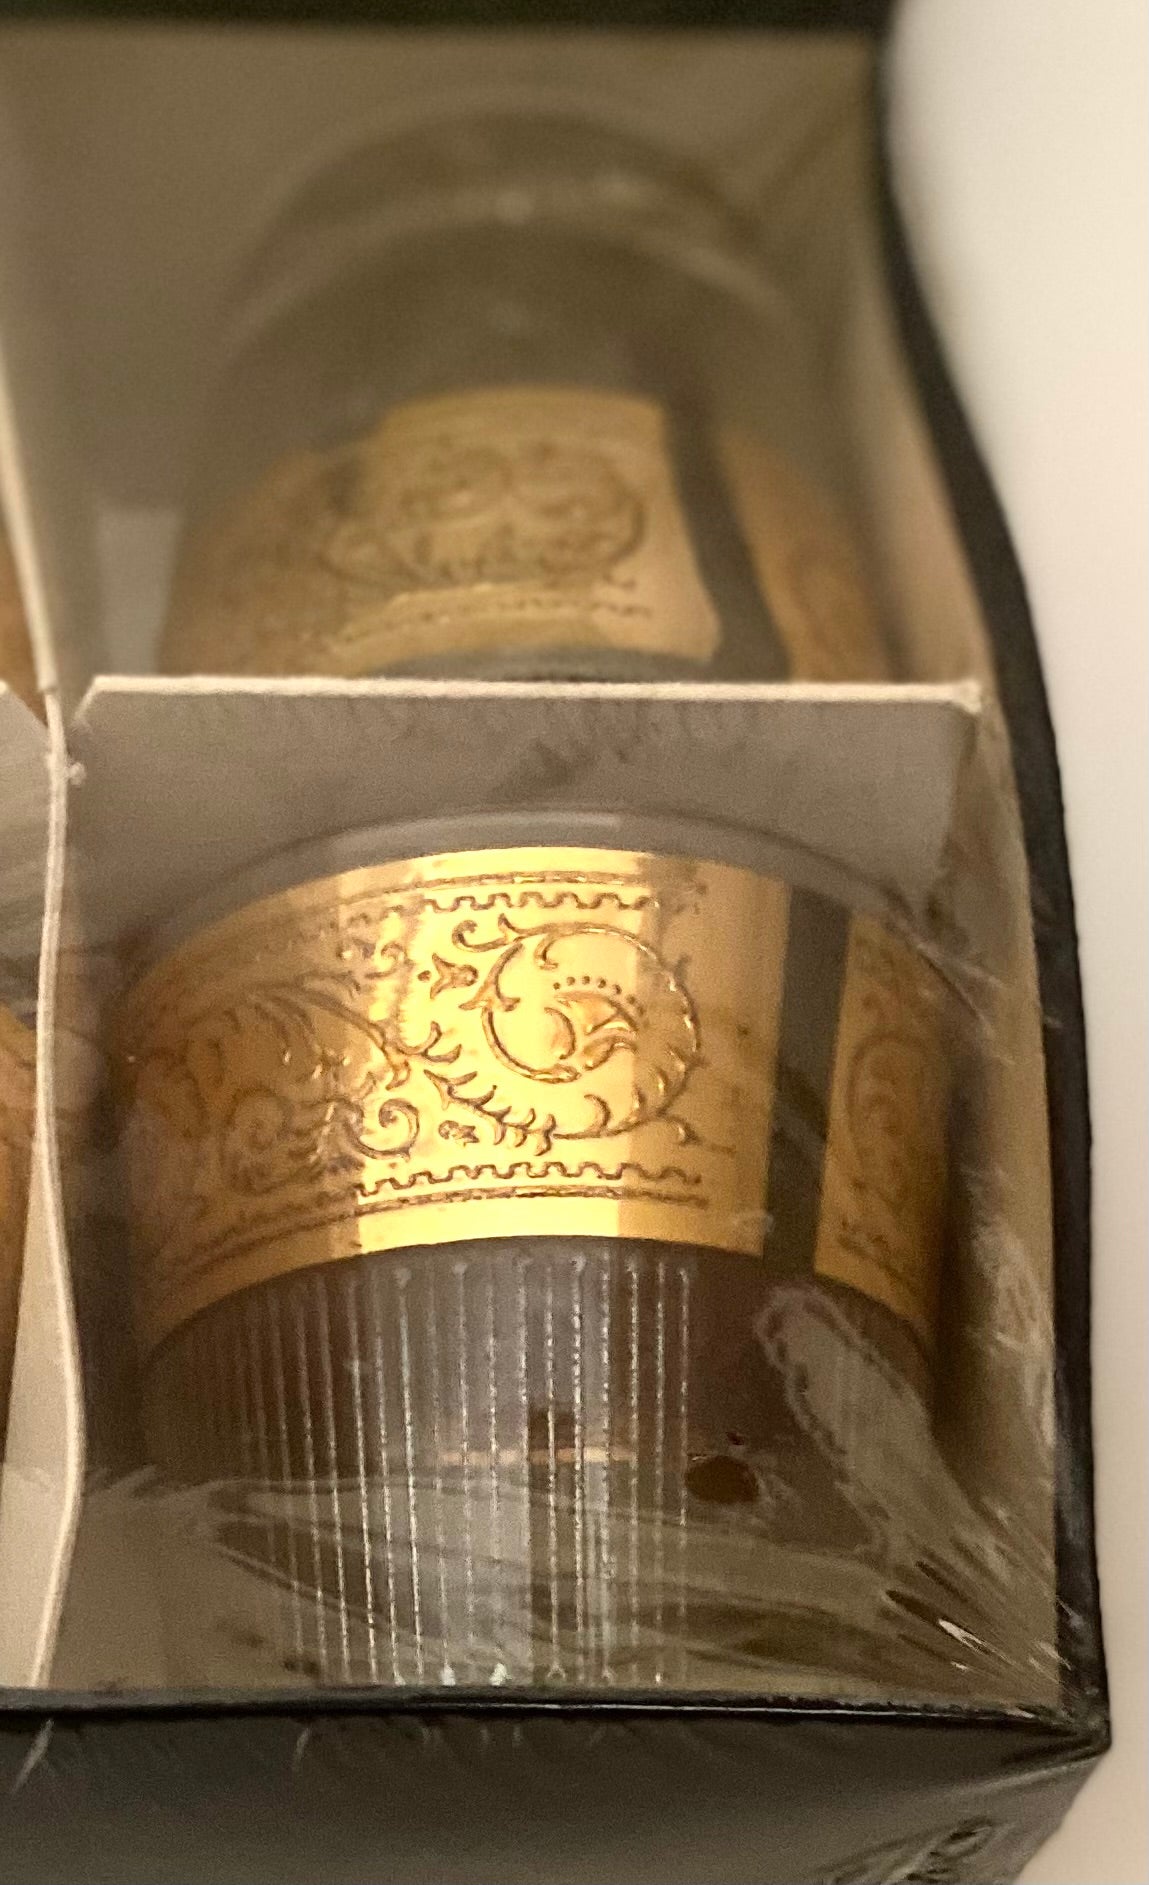 Starlyte Tiffany Whiskey Set of 6 in Original Box